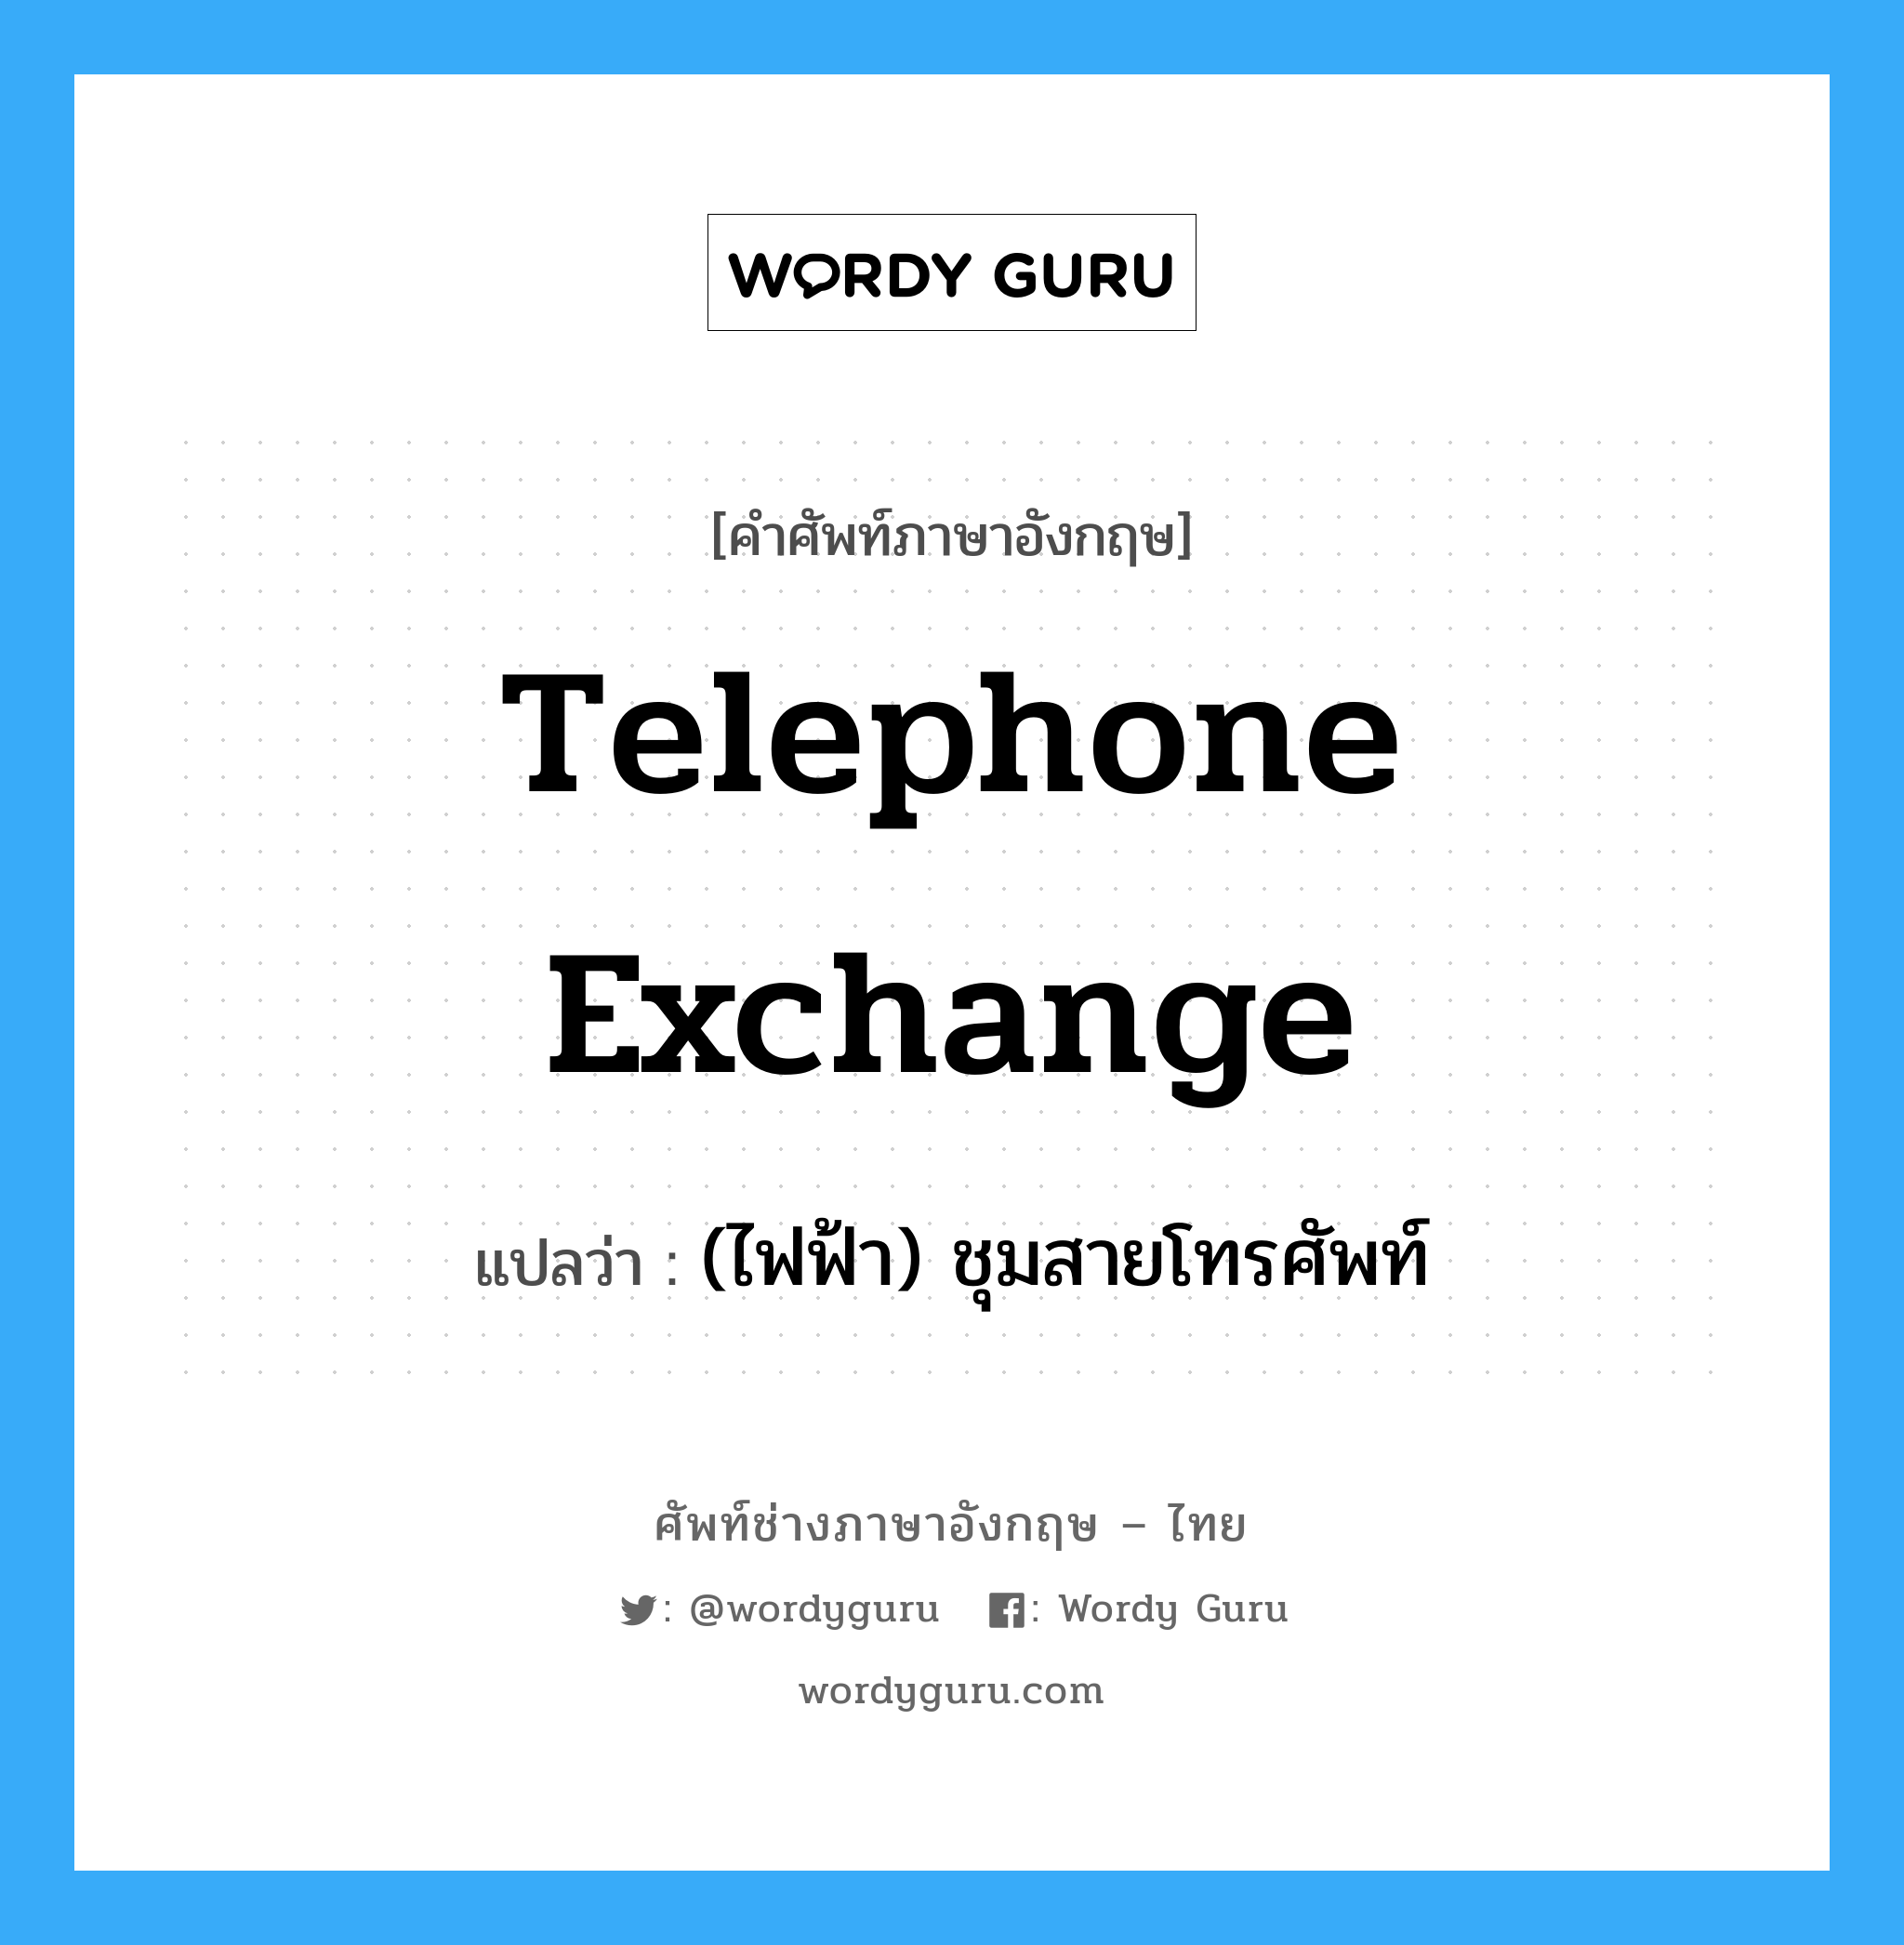 (ไฟฟ้า) ชุมสายโทรศัพท์ ภาษาอังกฤษ?, คำศัพท์ช่างภาษาอังกฤษ - ไทย (ไฟฟ้า) ชุมสายโทรศัพท์ คำศัพท์ภาษาอังกฤษ (ไฟฟ้า) ชุมสายโทรศัพท์ แปลว่า telephone exchange